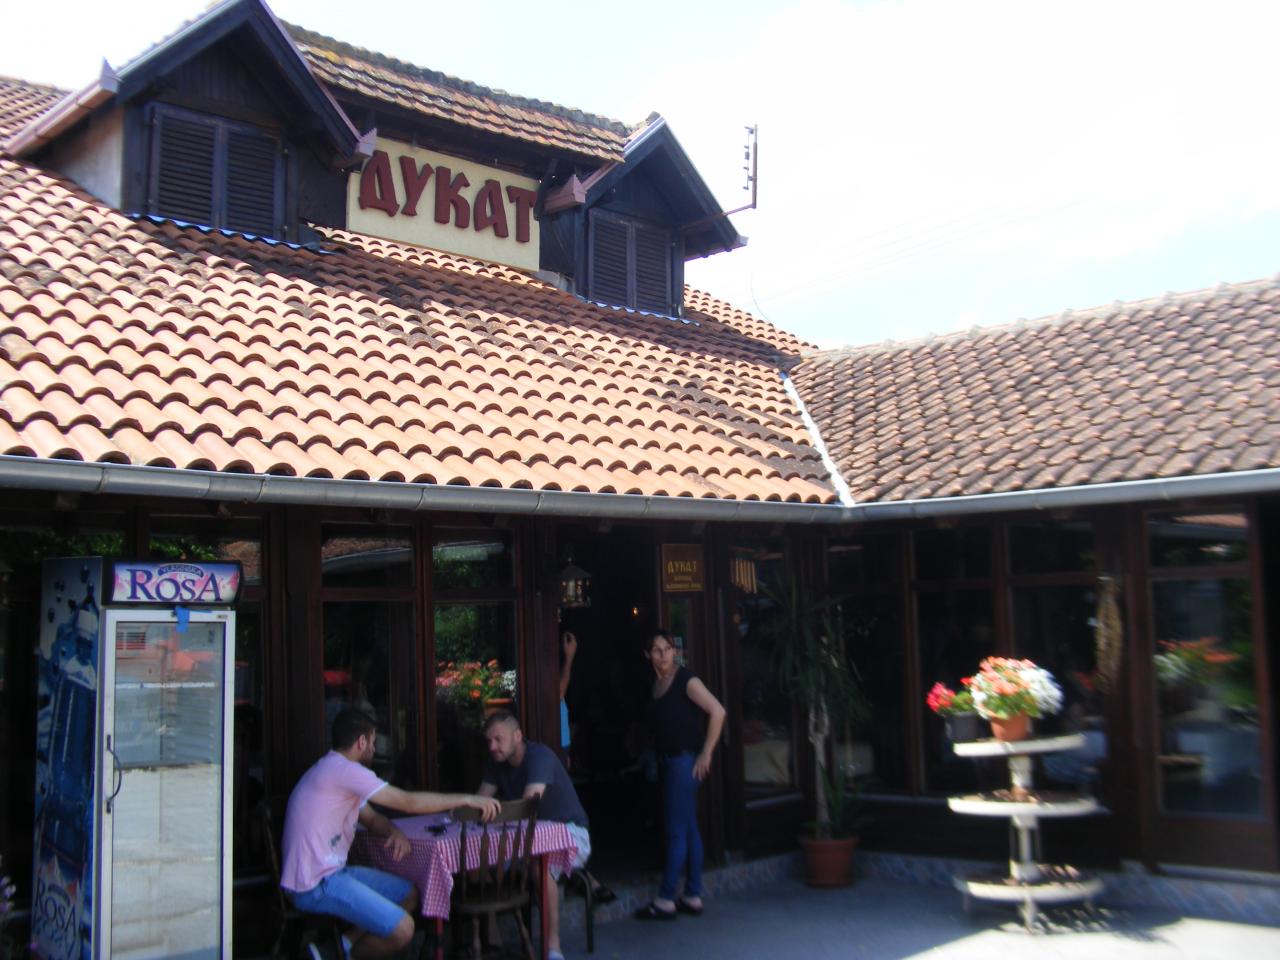 RESTAURANT DUKAT Restaurants for weddings Kragujevac - Photo 1